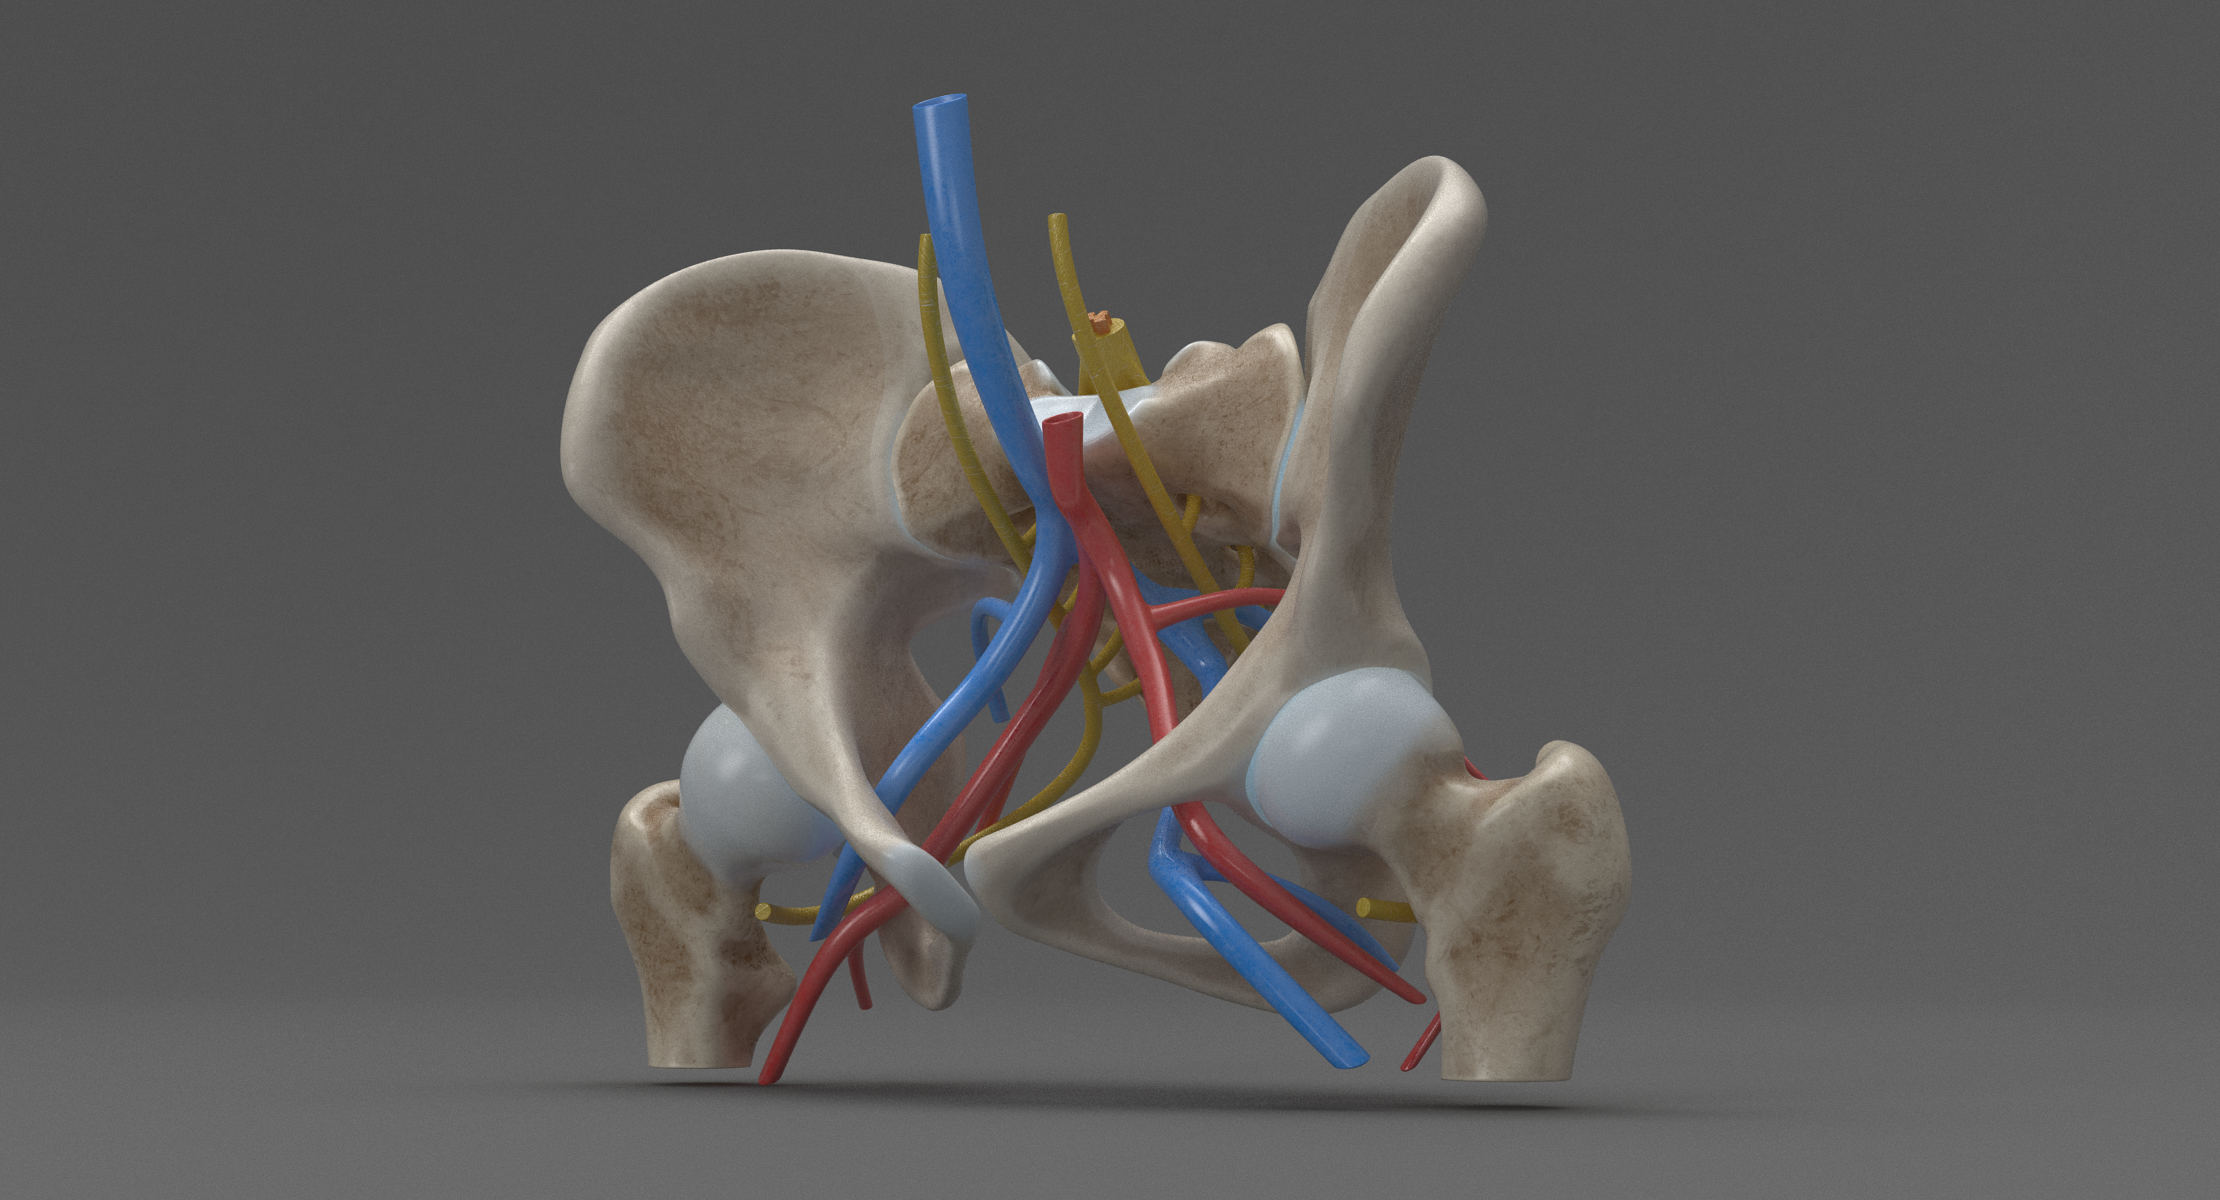 人体解剖学 - 女性骨盆(pbr)3d模型